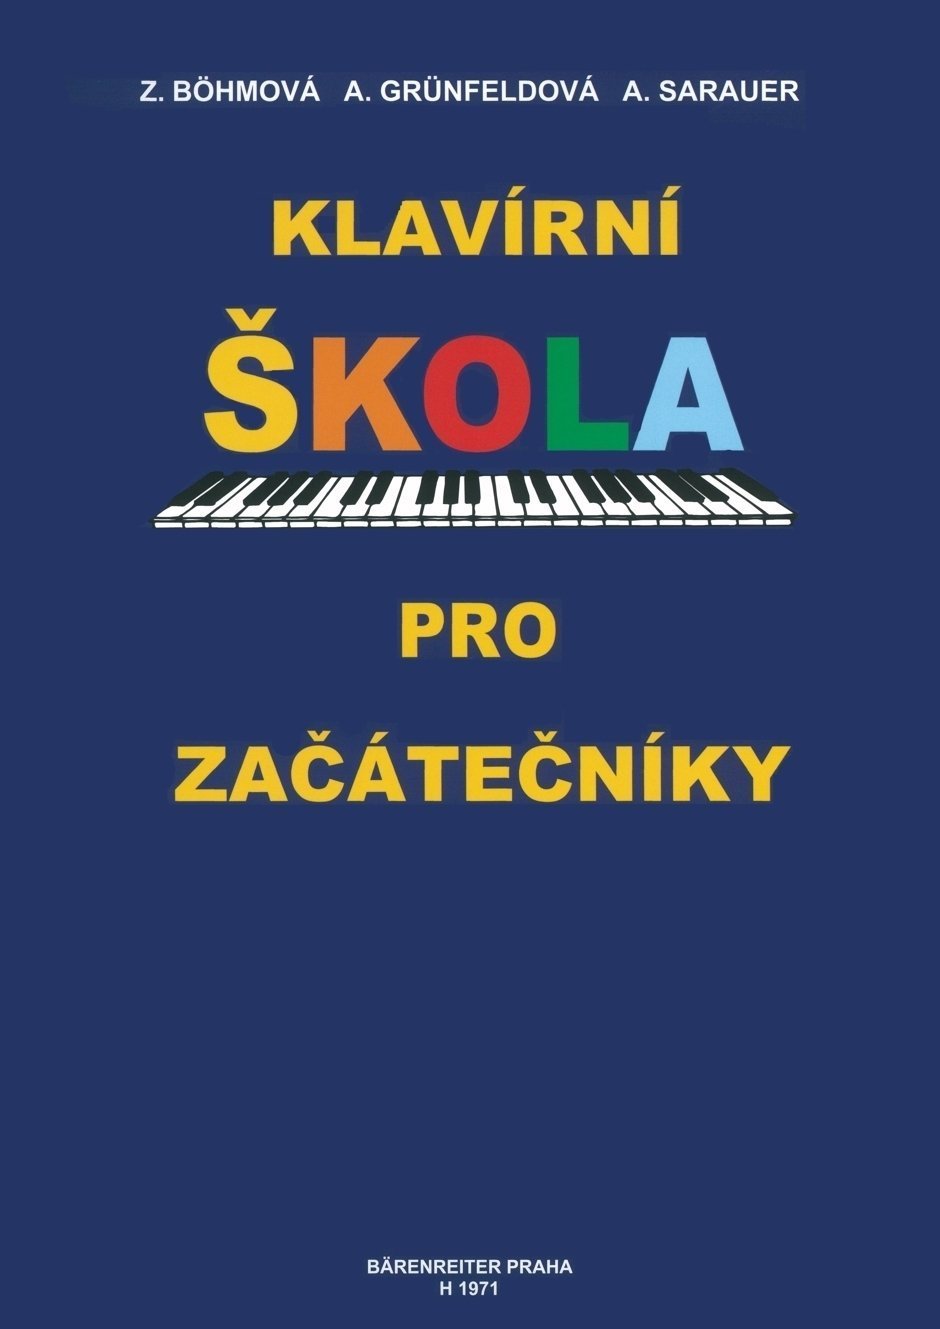 Нотни листи за пиано Böhmová-Grünfeldová-Sarauer Klavírní škola pro začatečníky Нотна музика